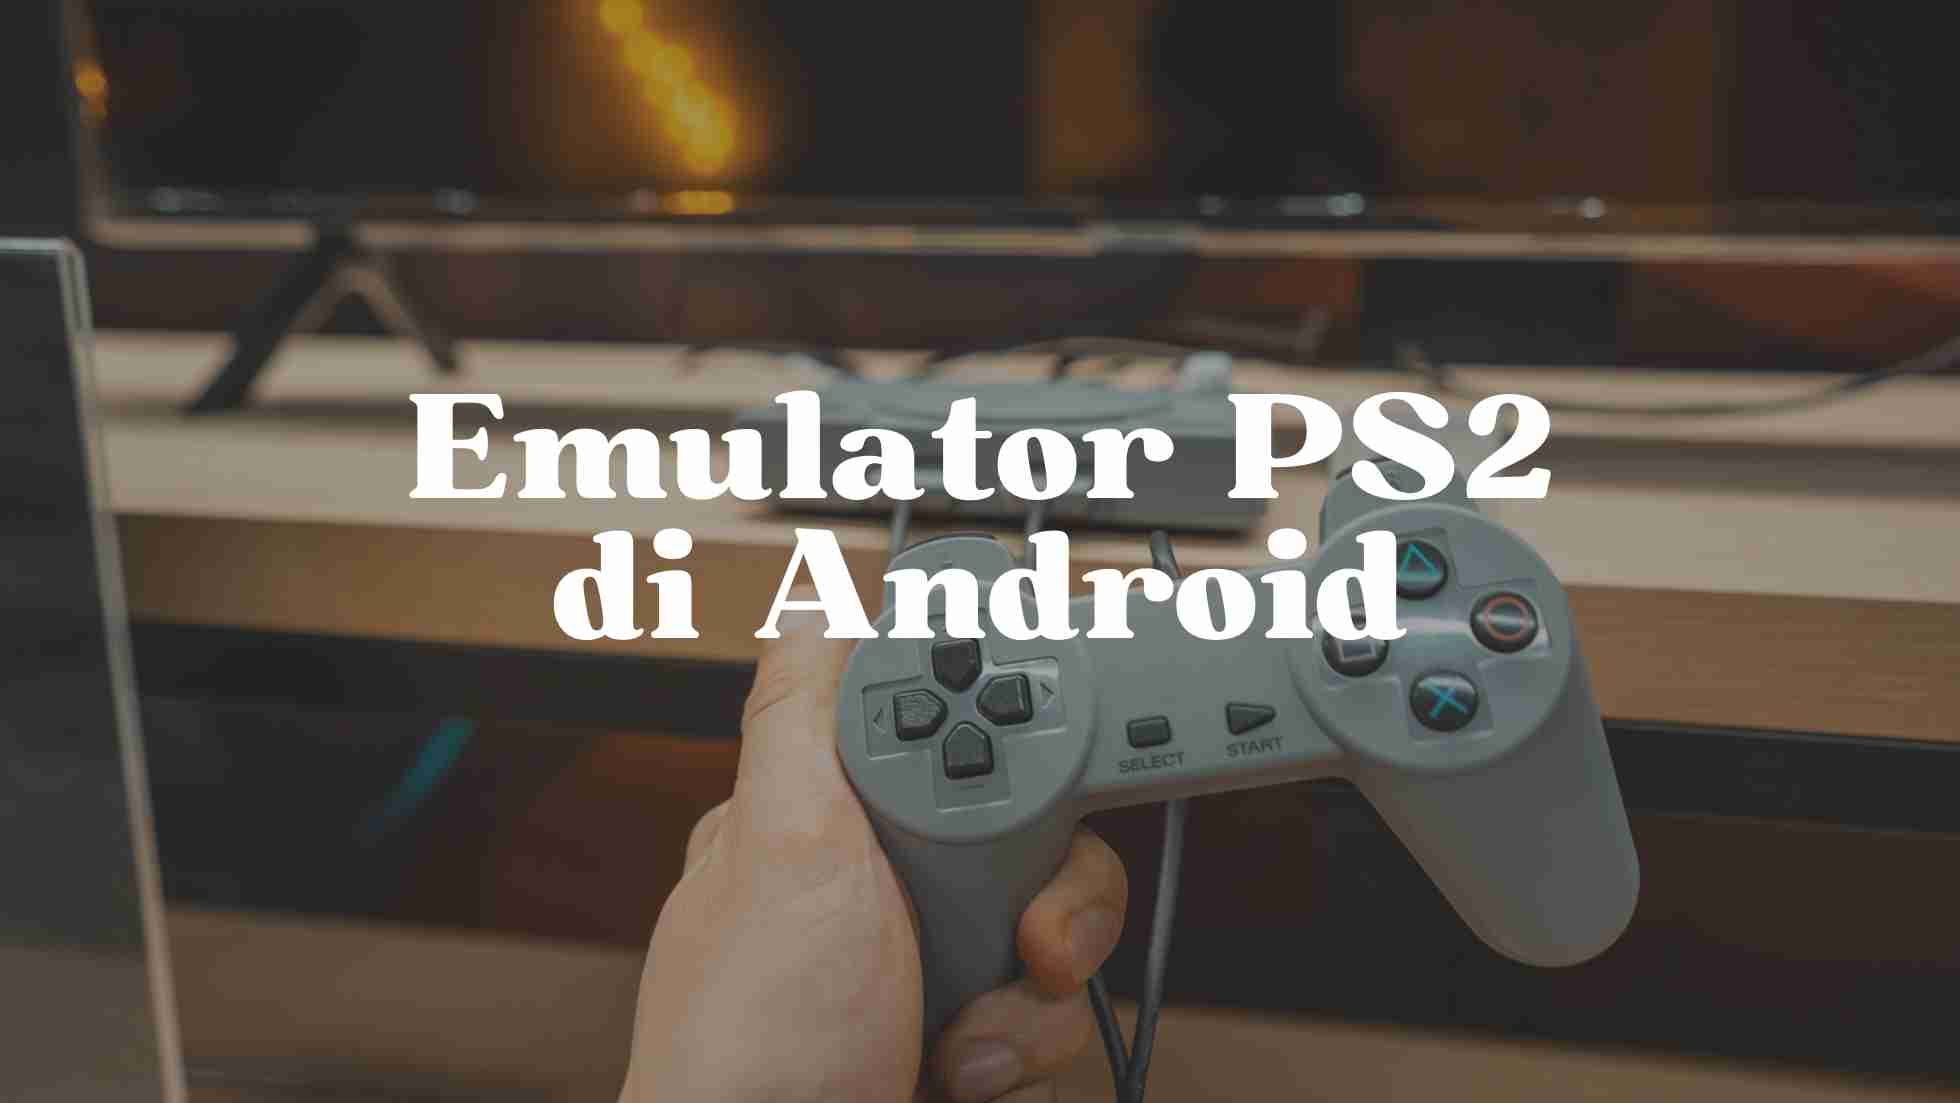 Emulator ps2 di android terbaik